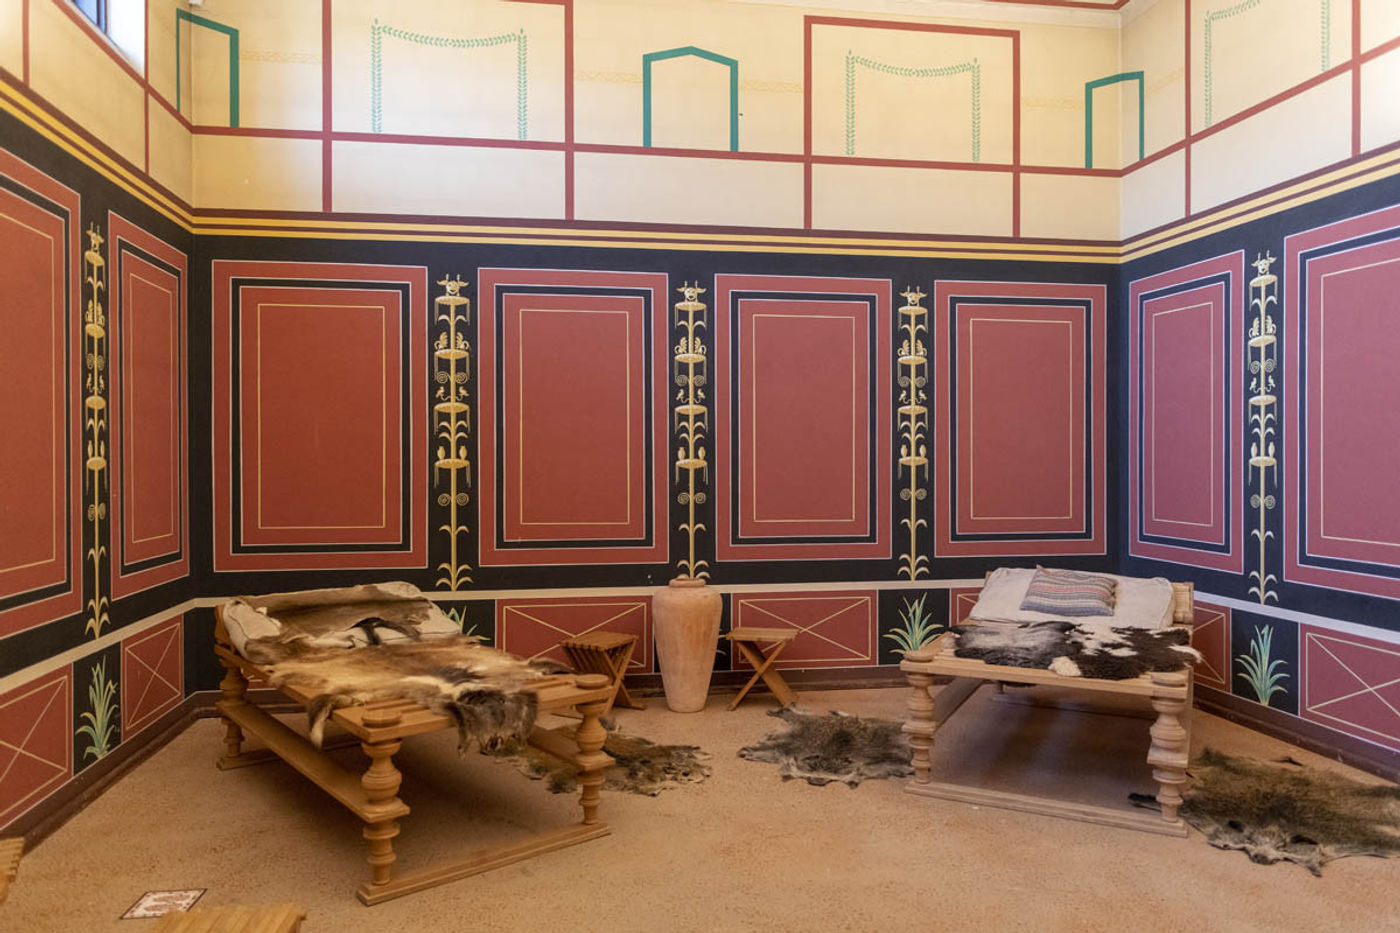 Römische Lebensart in rekonstruierter Villa